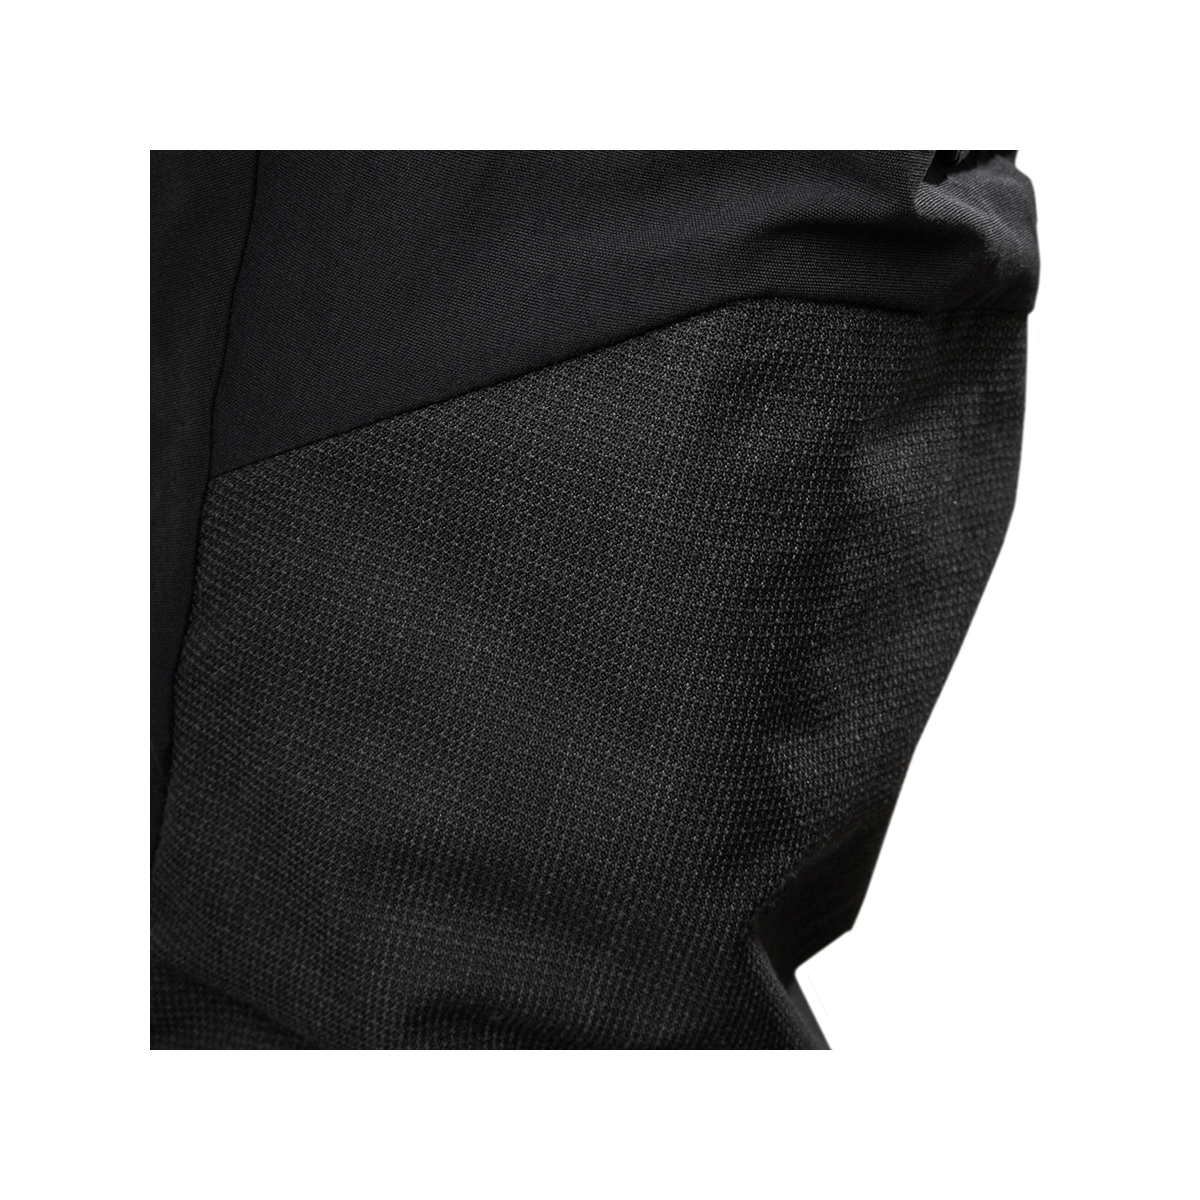 Musto Evolution Performance pantalon de voile 2.0 homme noir, taille 40